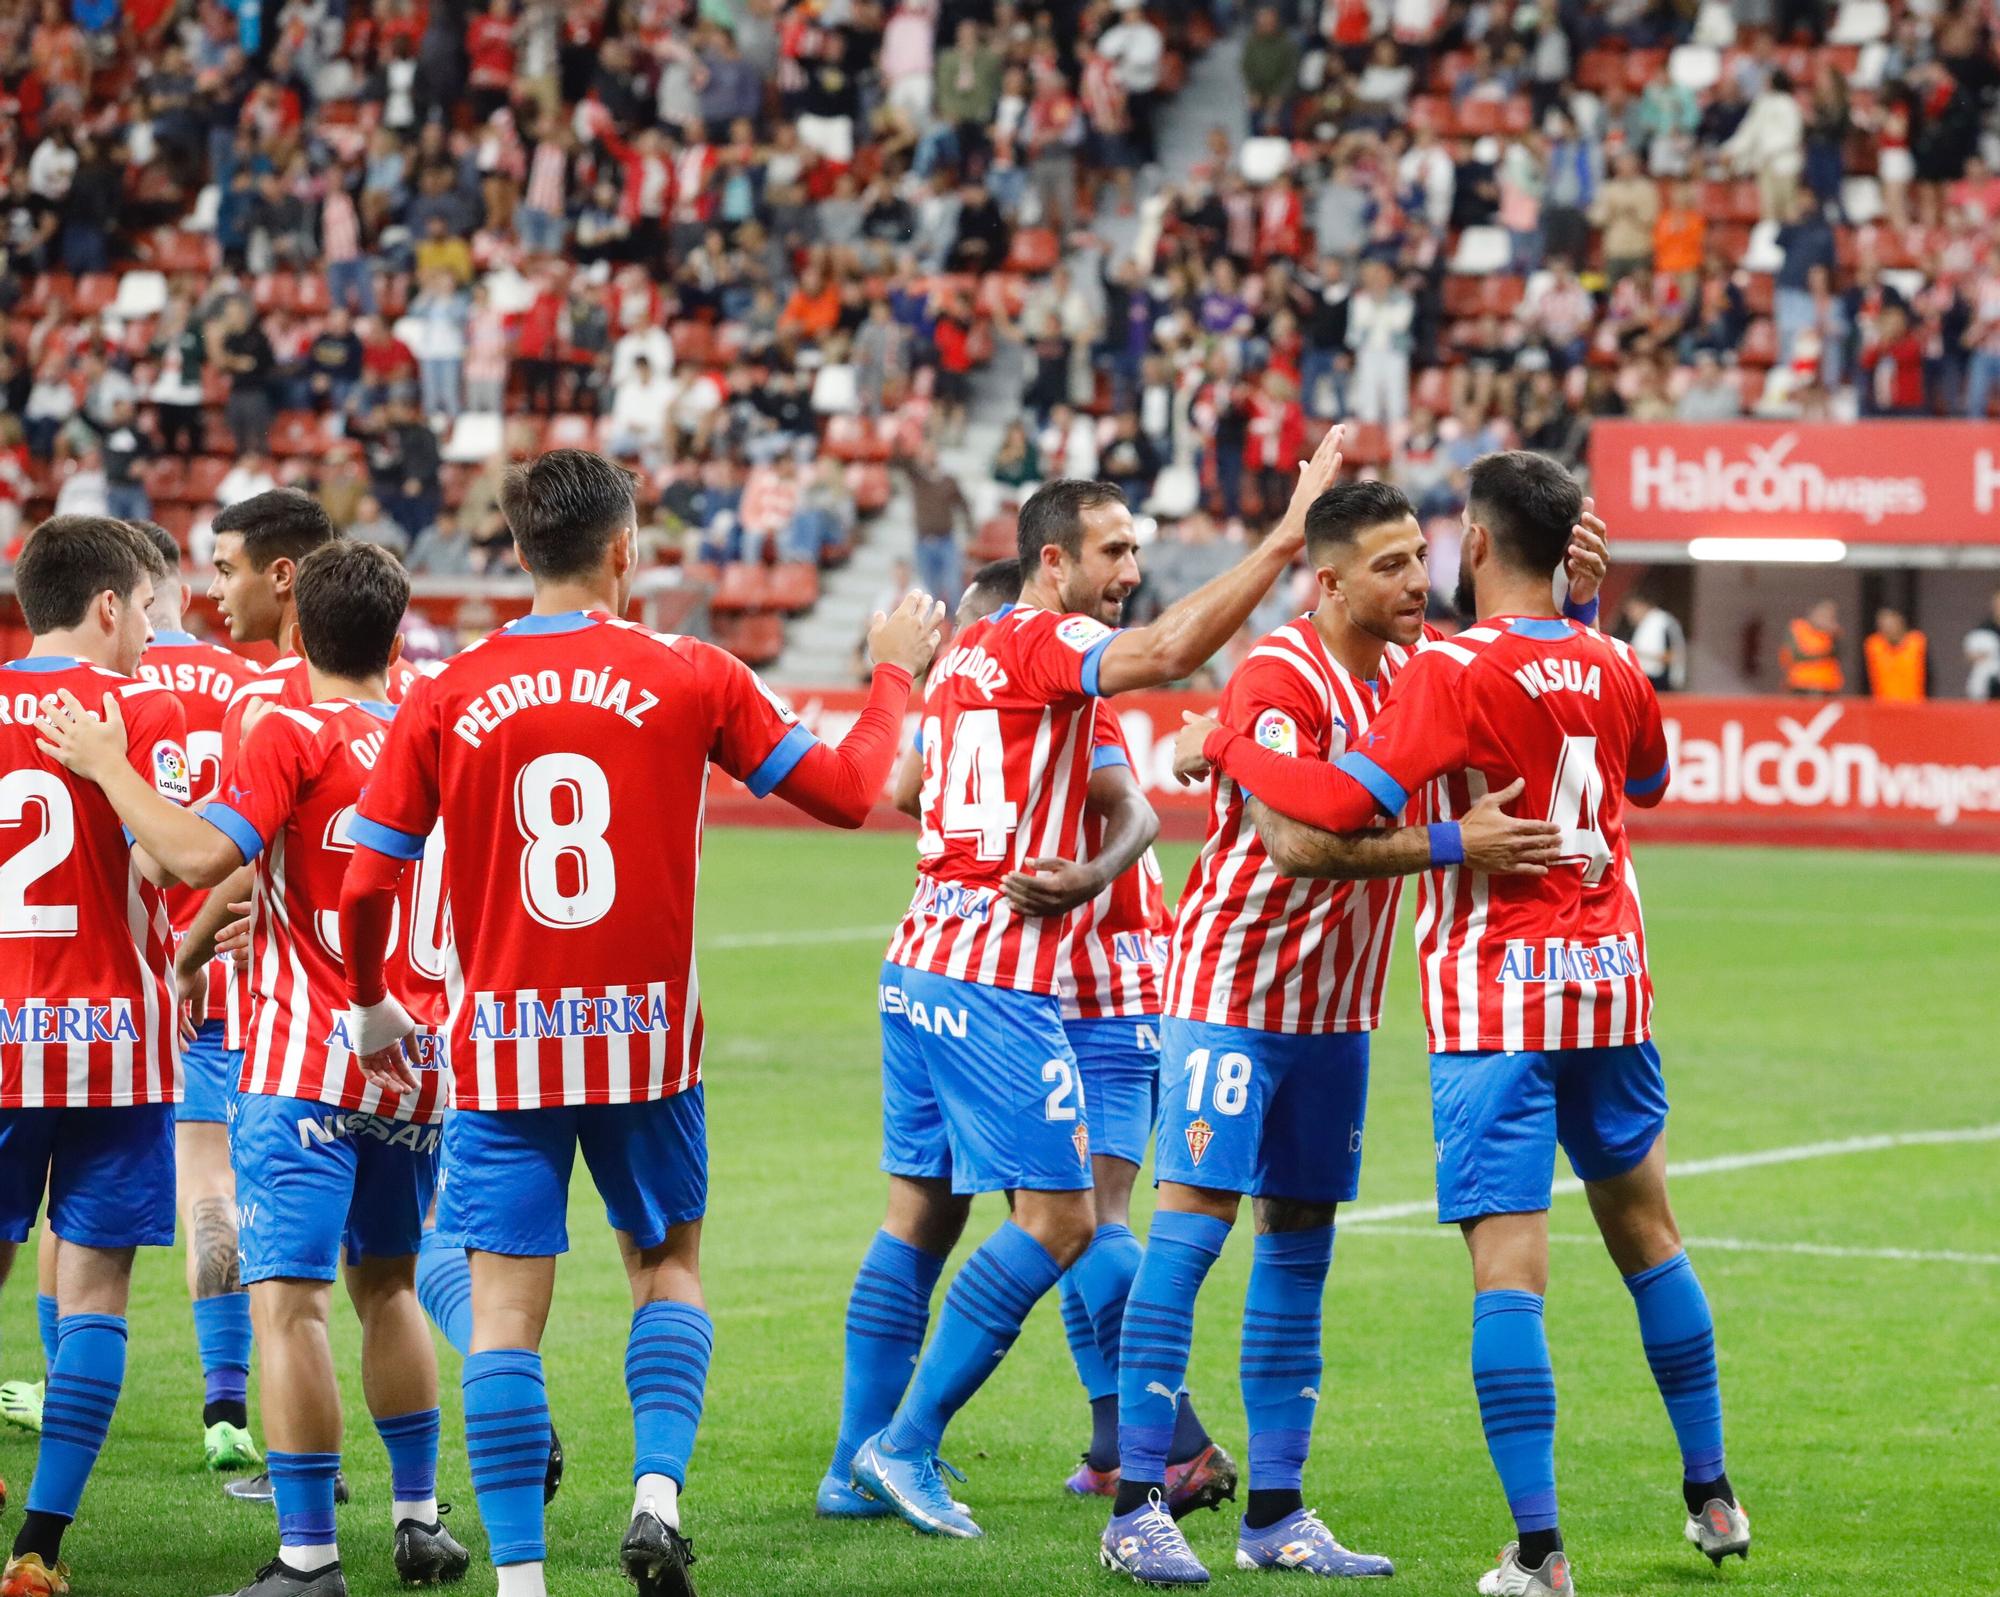 En imágenes: El Sporting consigue los tres puntos ante el Ibiza en un partido muy disputado